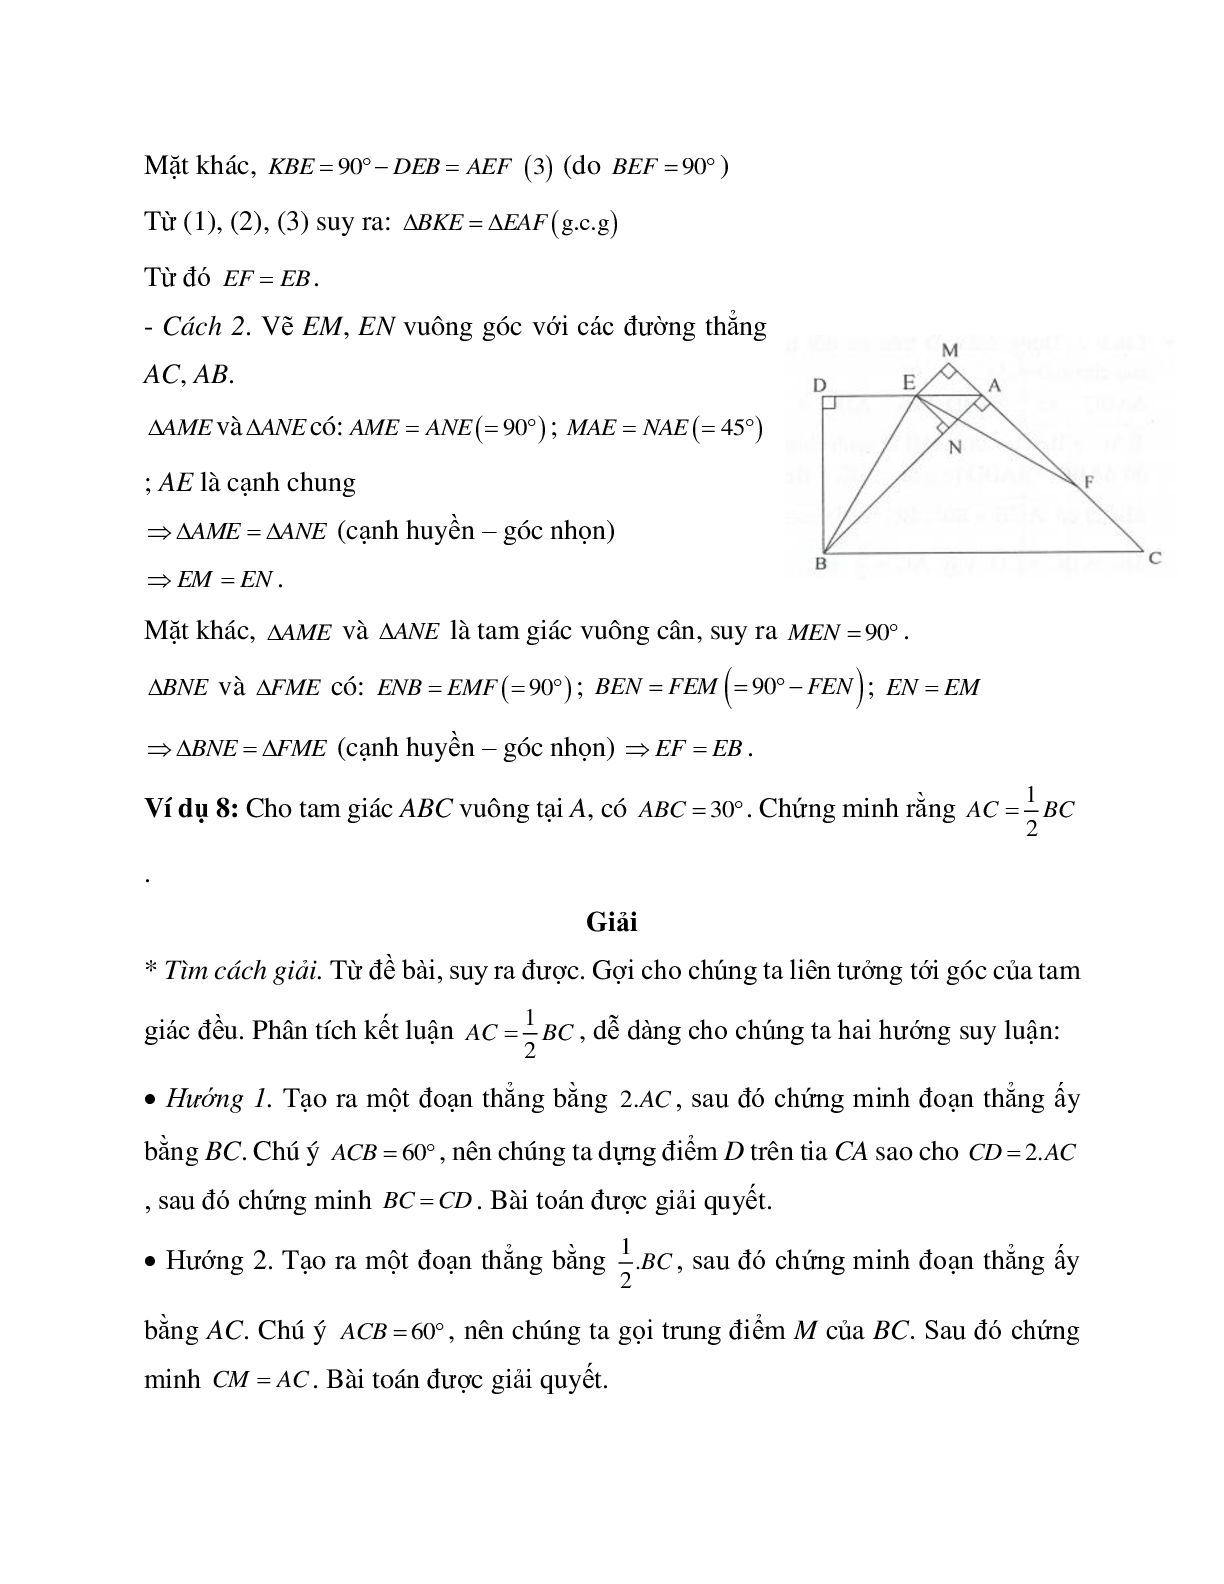 Phương pháp và bài tập về Tam giác cân - Tam giác đều có lời giải (trang 9)